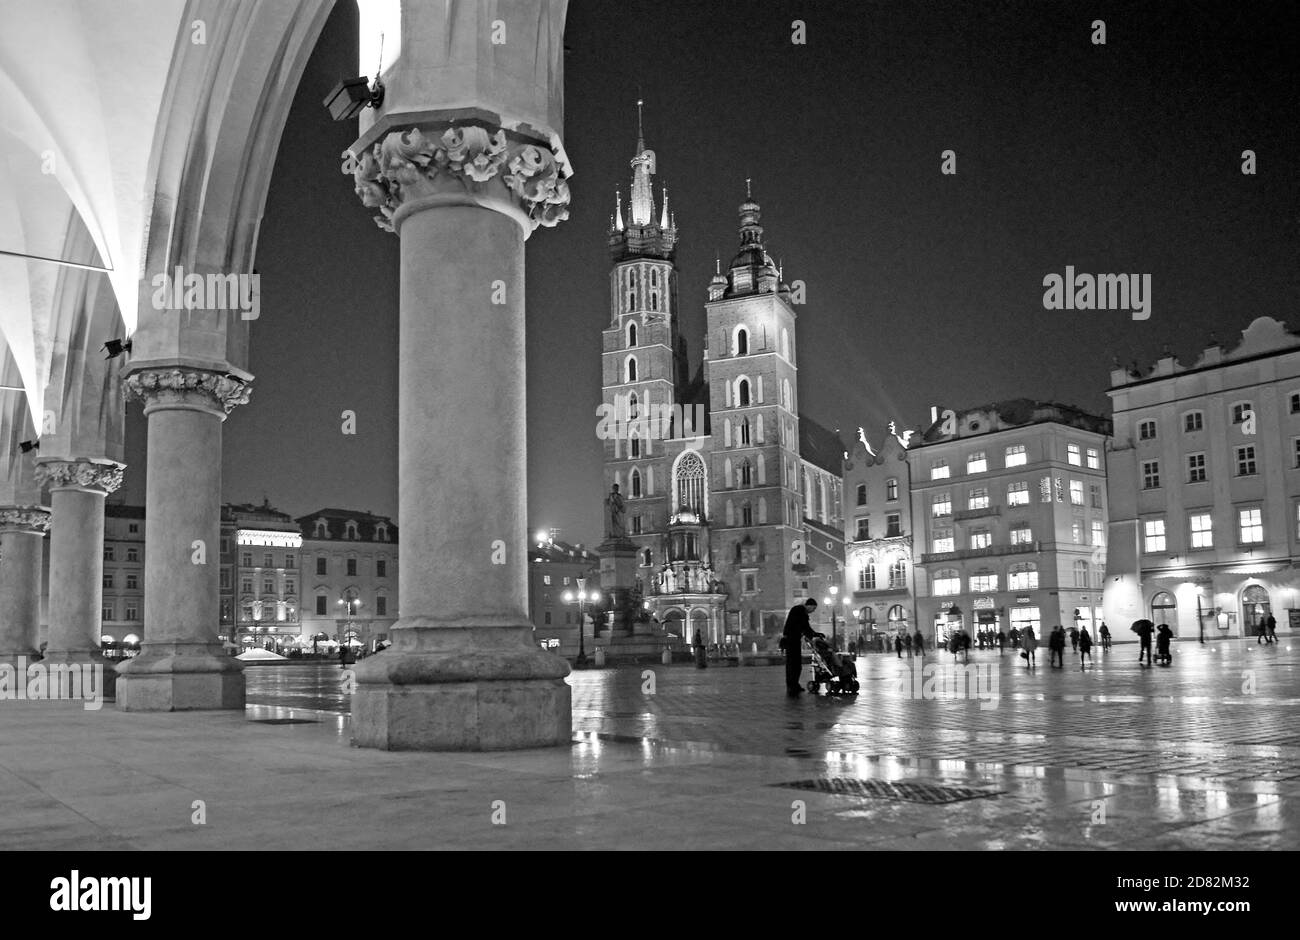 Aus der Tuchhalle, einer regnerischen Nacht auf dem Marktplatz aus dem 13. Jahrhundert in Krakau, Polen, kann man die gotischen Türme der Marienbasilika erhellen. Stockfoto